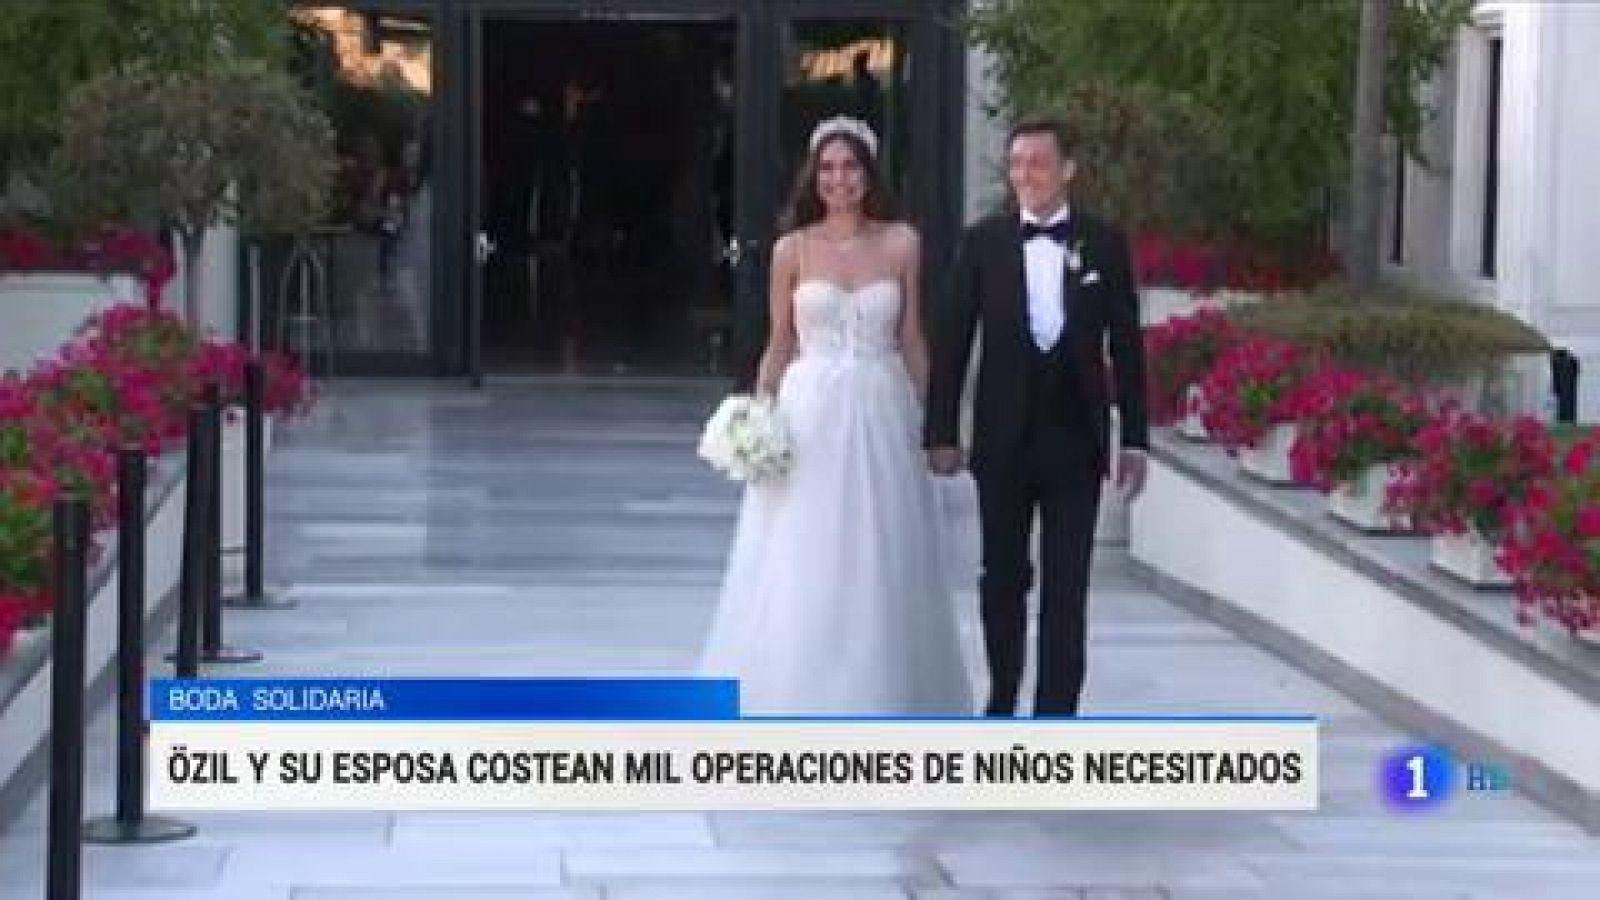 Özil y su esposa costean 1.000 operaciones a niños necesitados con motivo de su boda